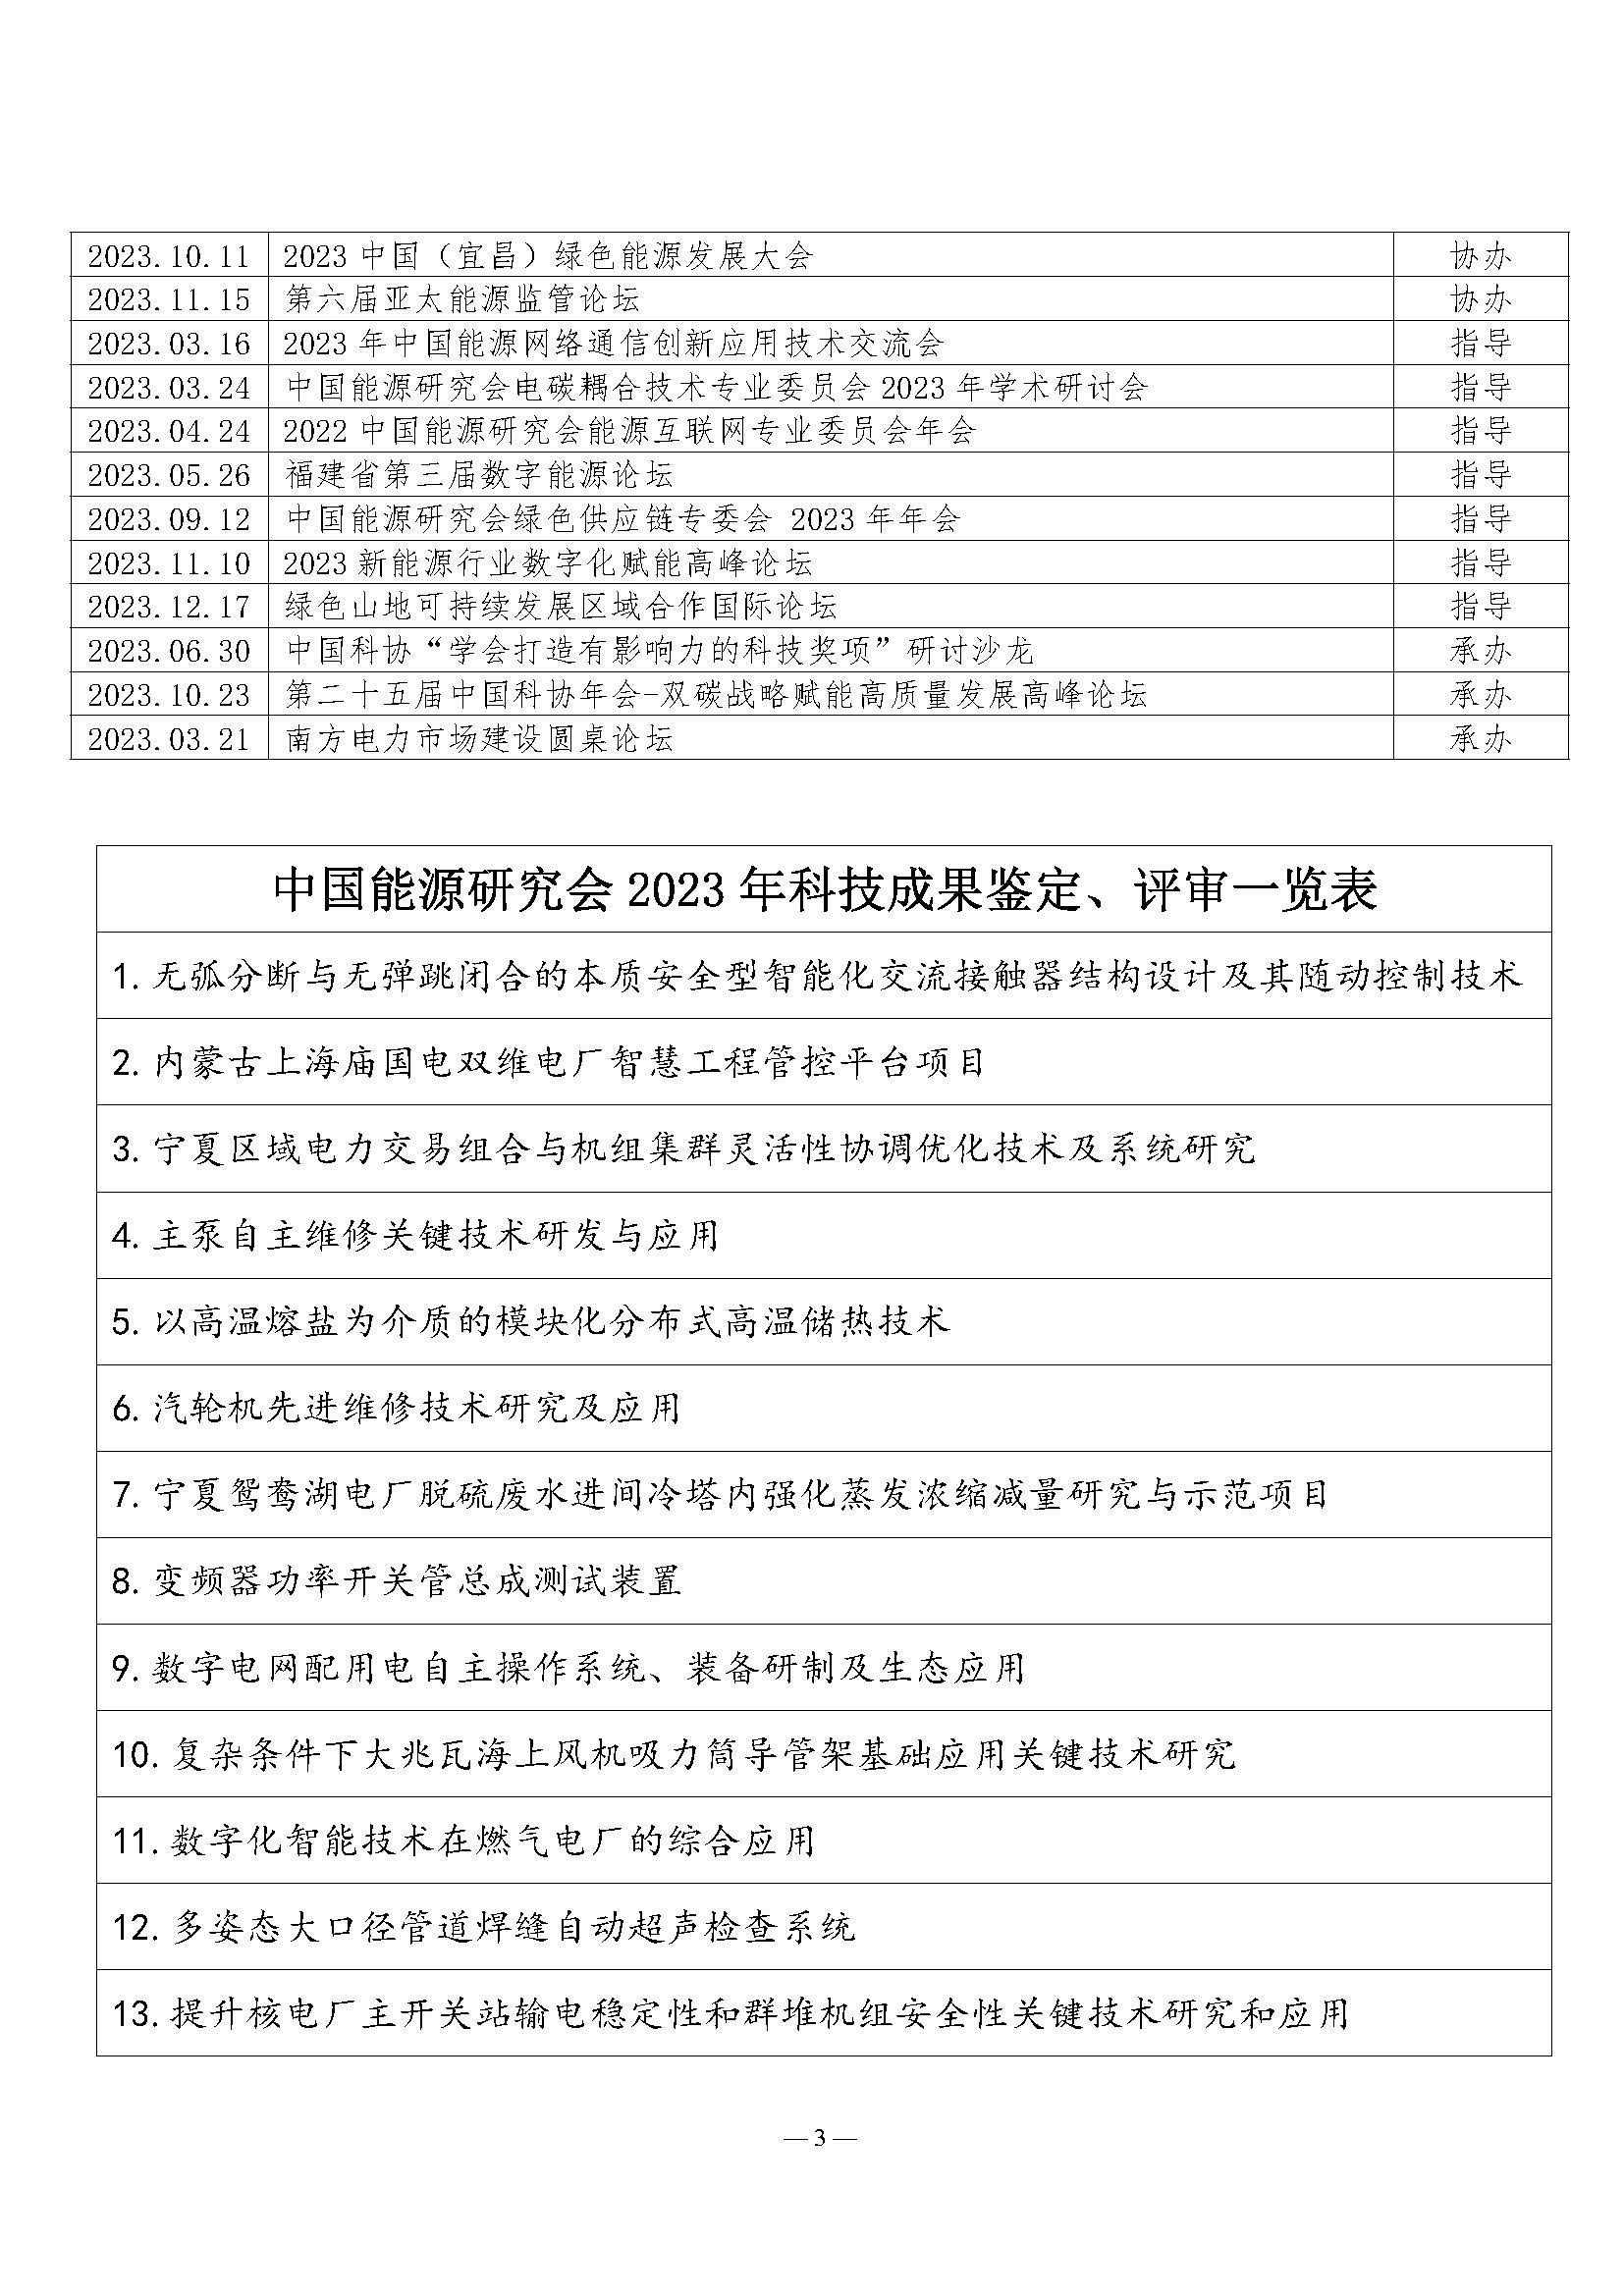 中国能源研究会2023年学术活动和项目汇总(3)_页面_3.jpg